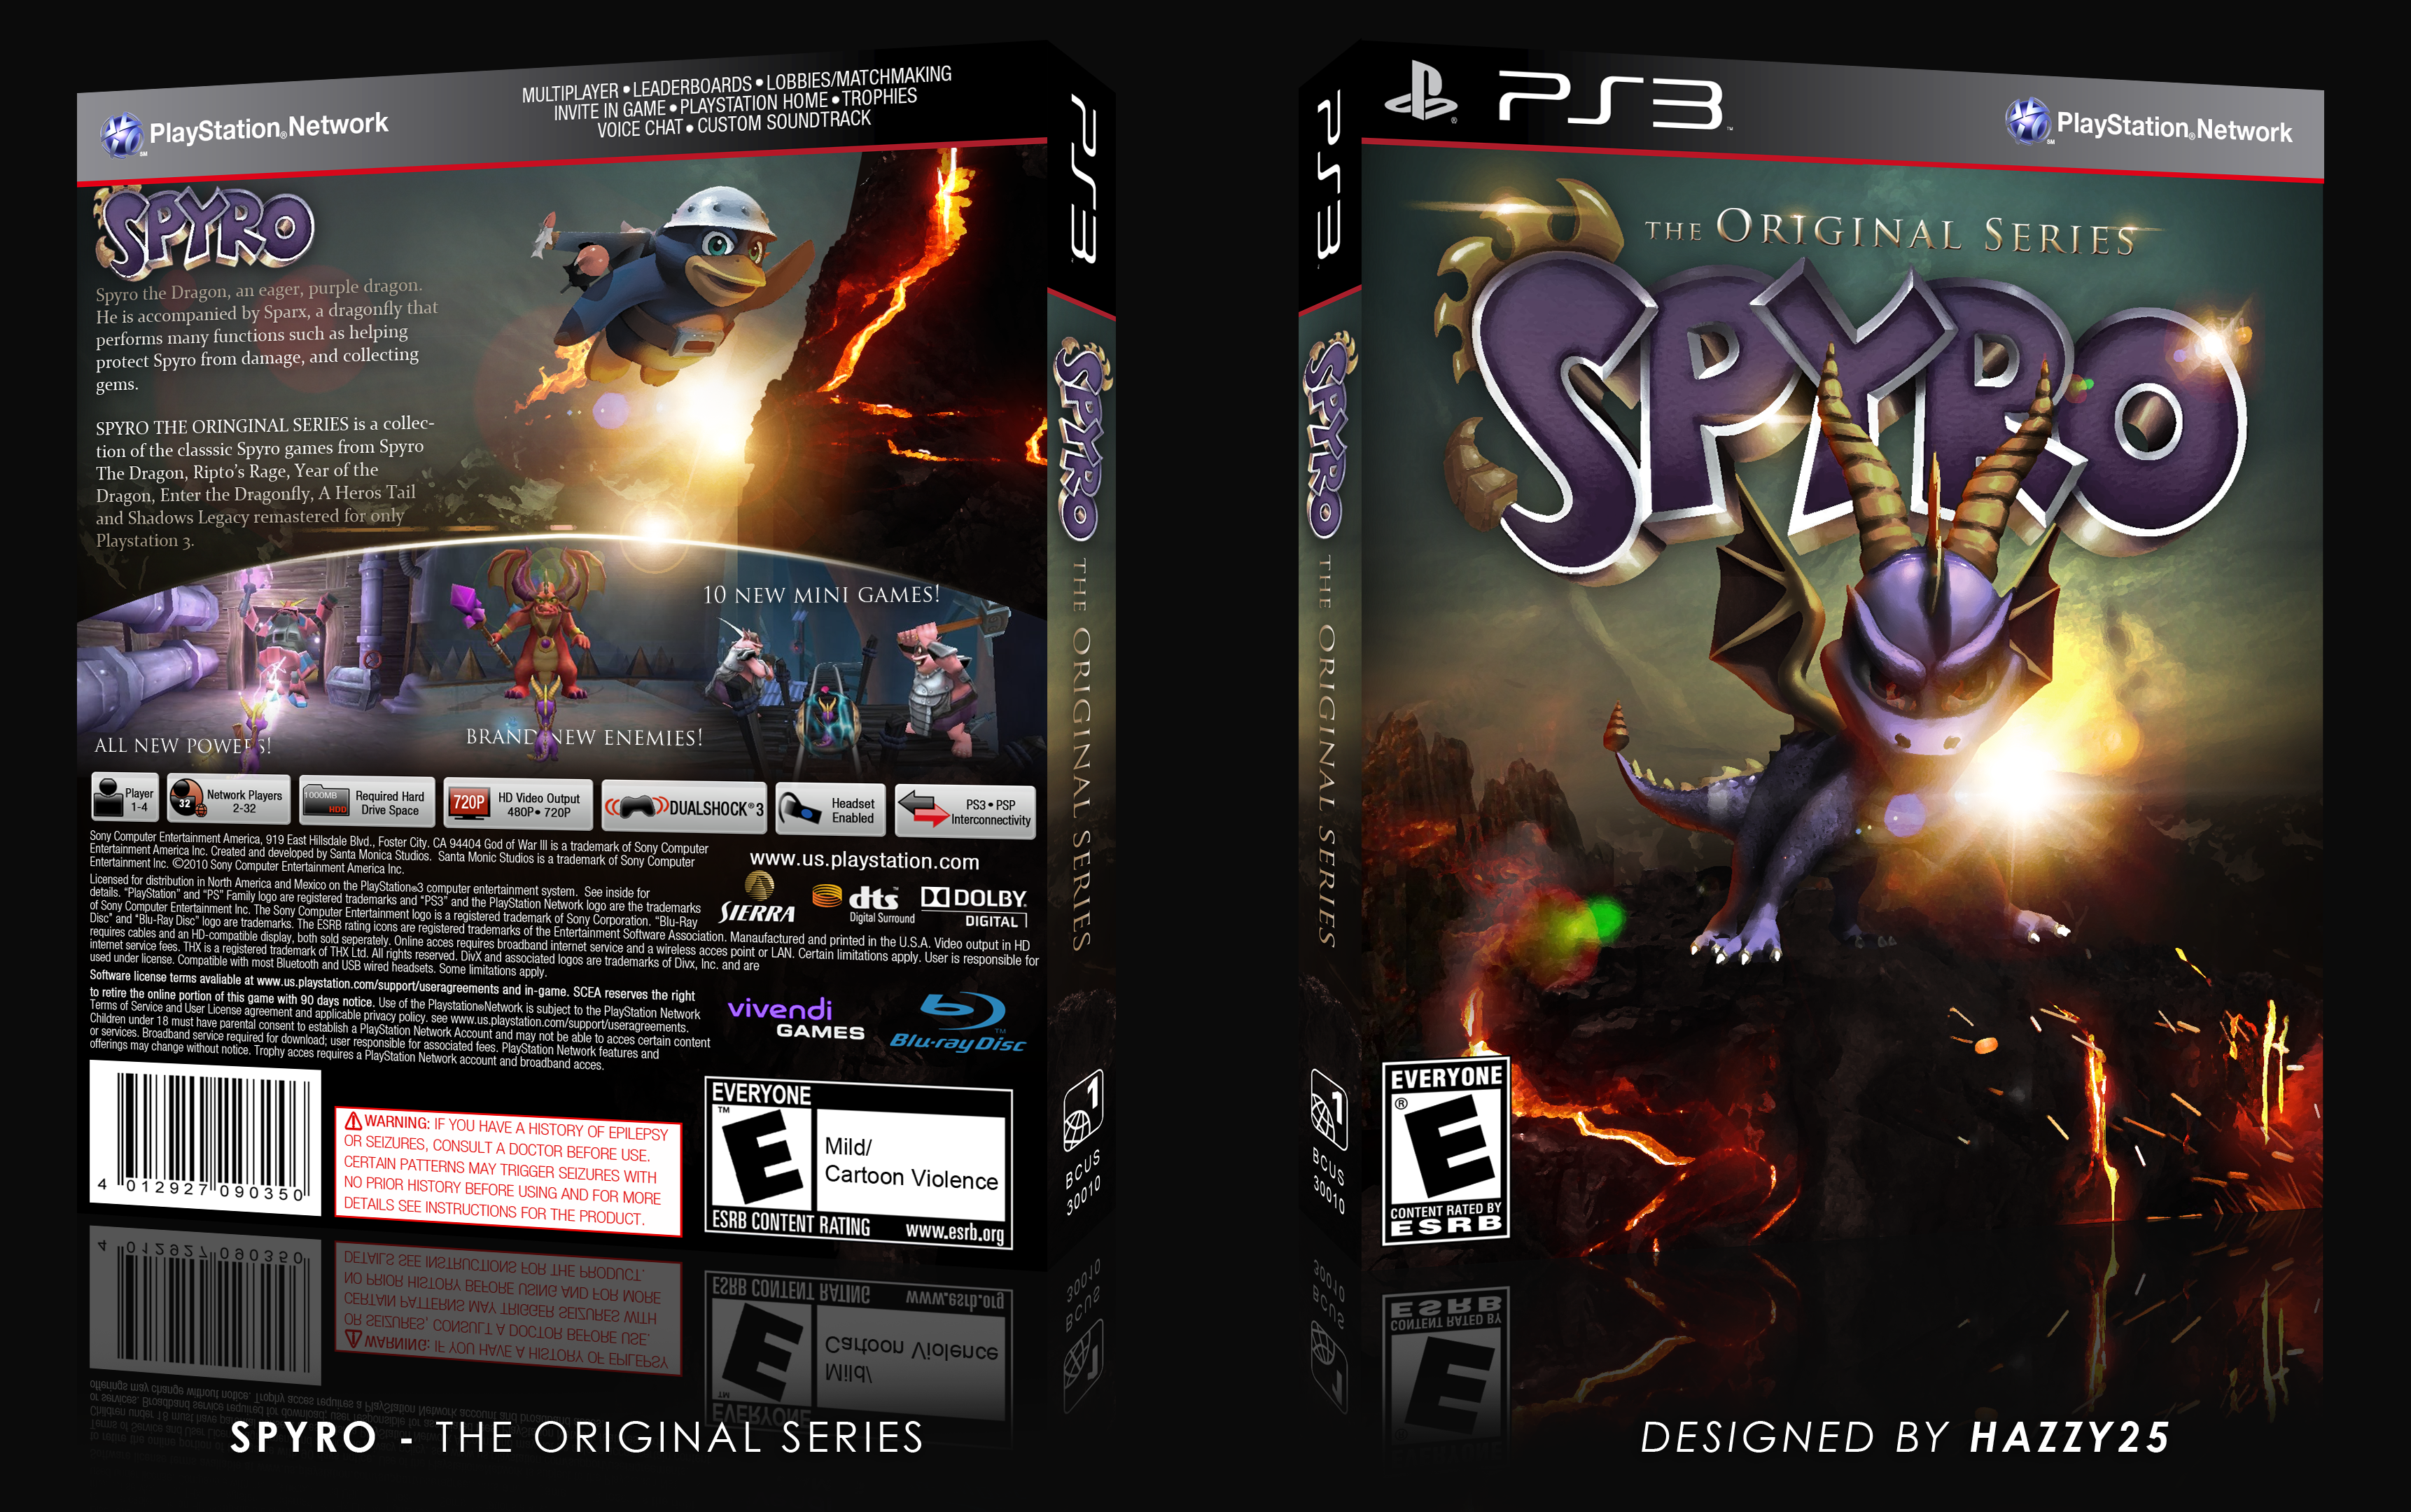 Spyro - The Original Series box cover